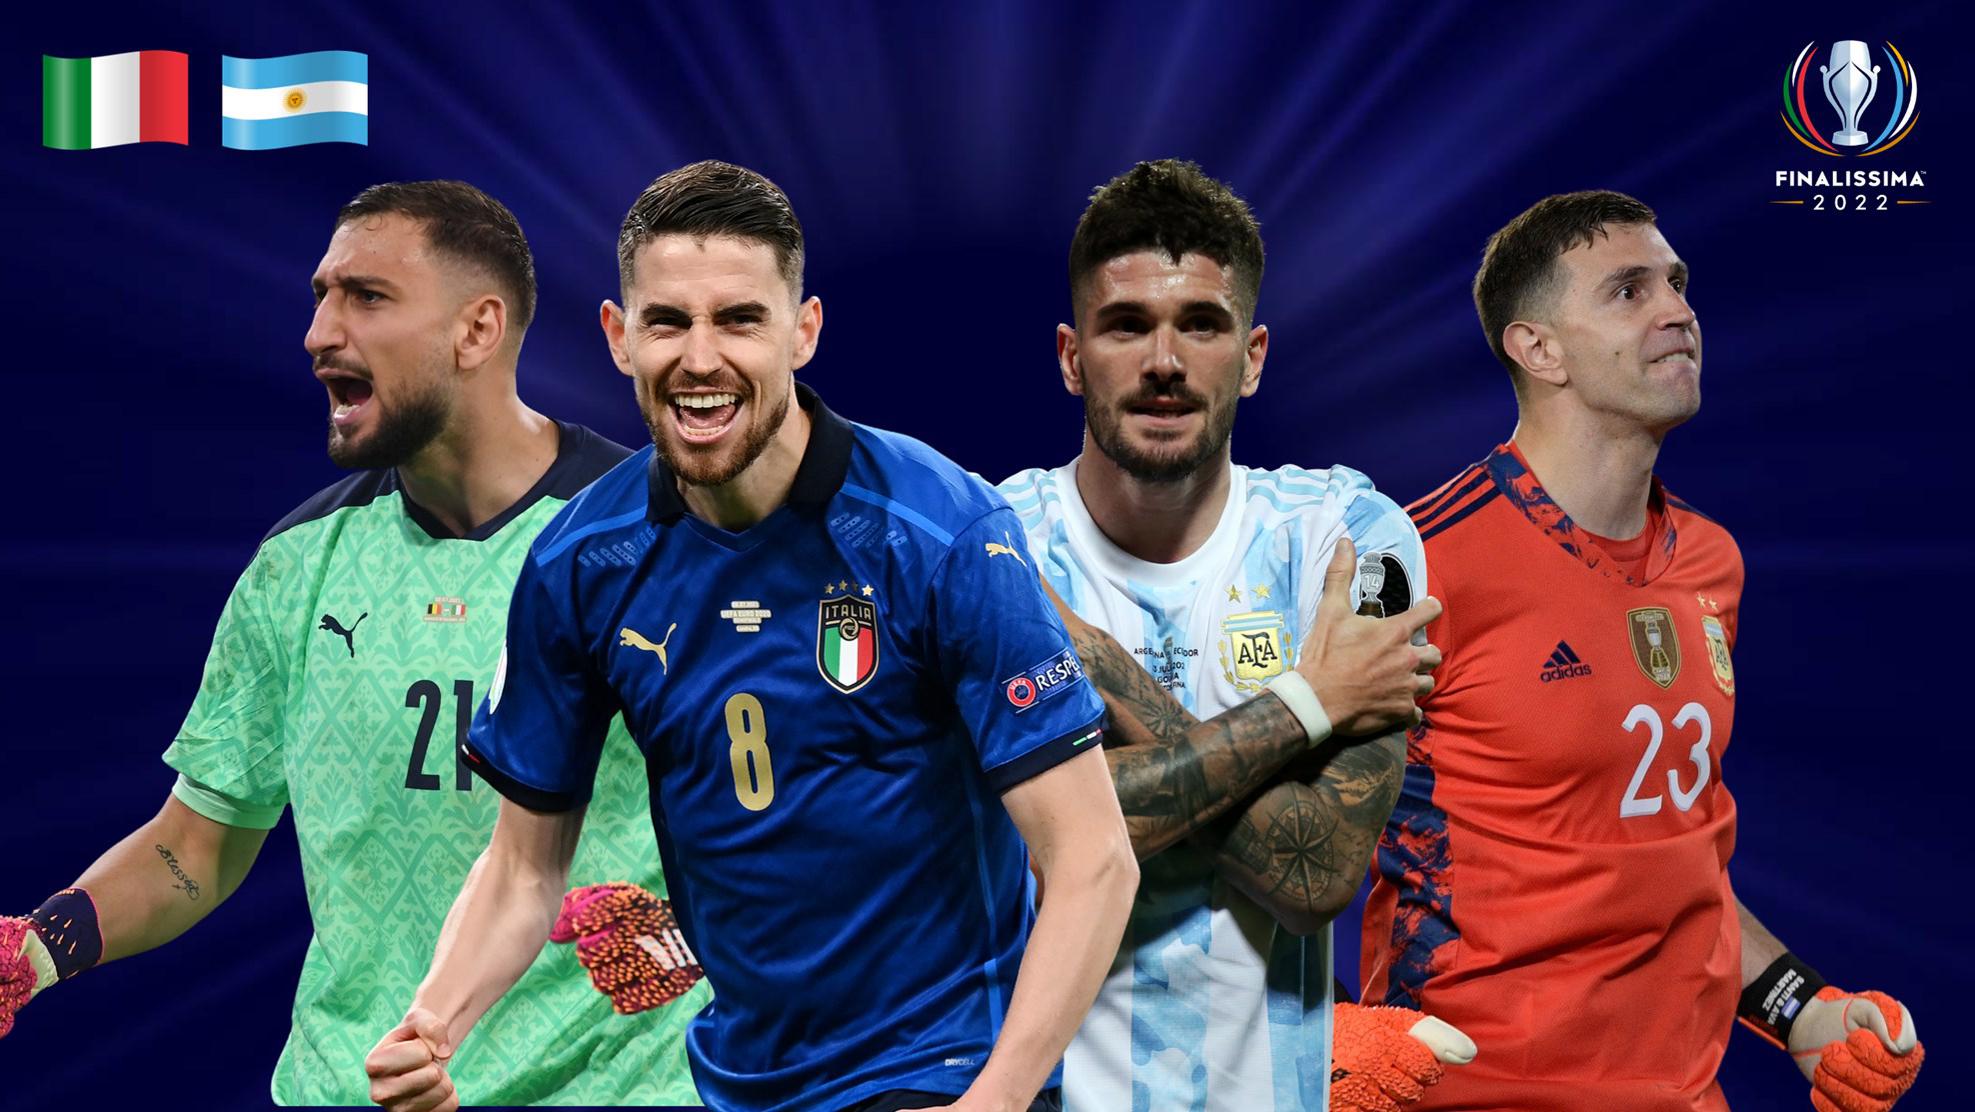 Itália - Argentina na Finalíssima 2022: O que esperar | Finalíssima |  UEFA.com